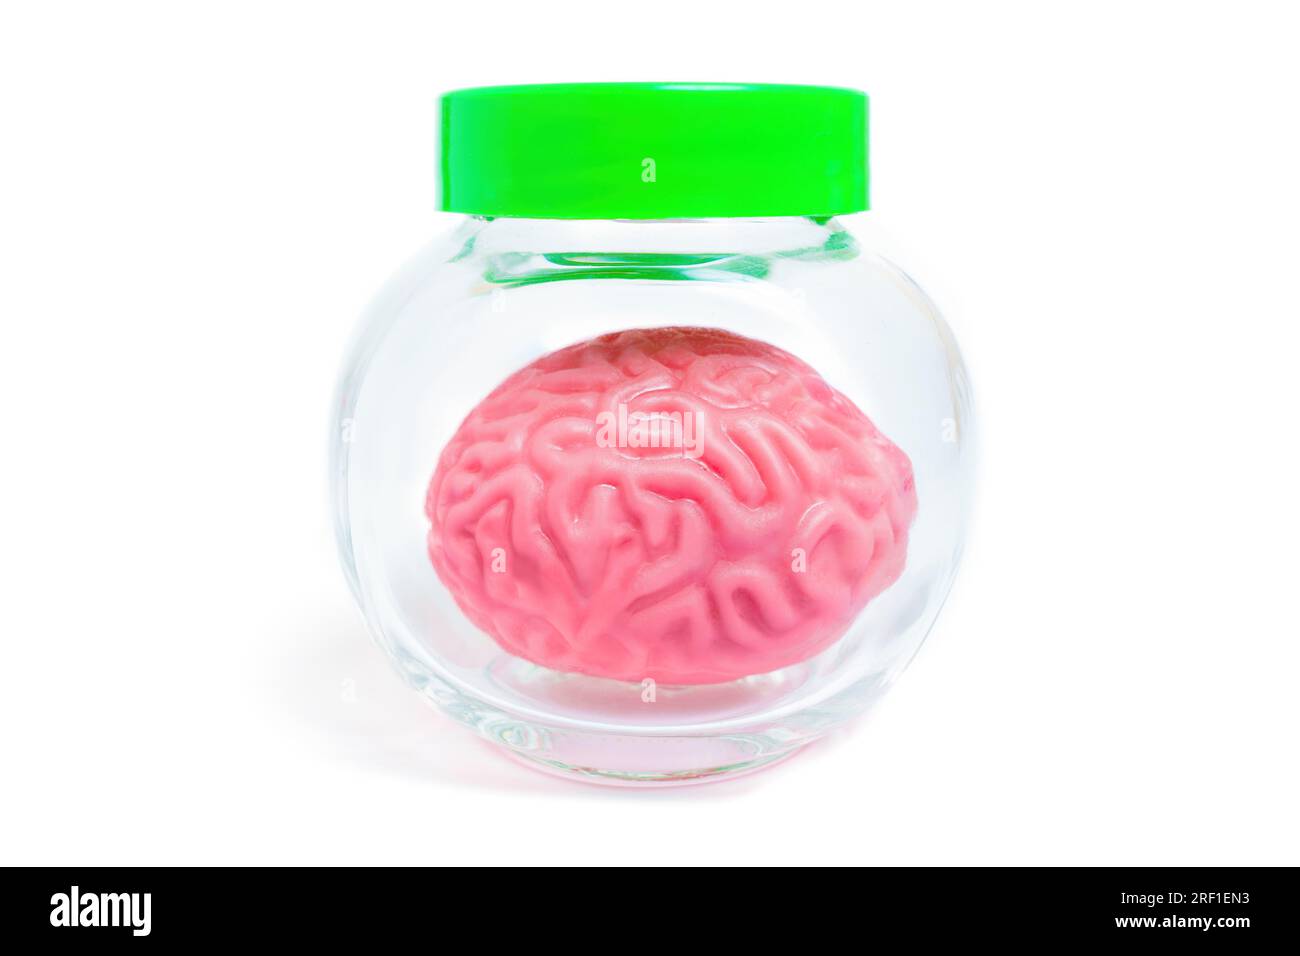 Rosafarbenes, gelee ähnliches menschliches Hirnmodell in einem Glasgefäß, isoliert auf weißem Hintergrund. Kreatives Konzept in Bezug auf Neurologie, Neurowissenschaften und Brai Stockfoto